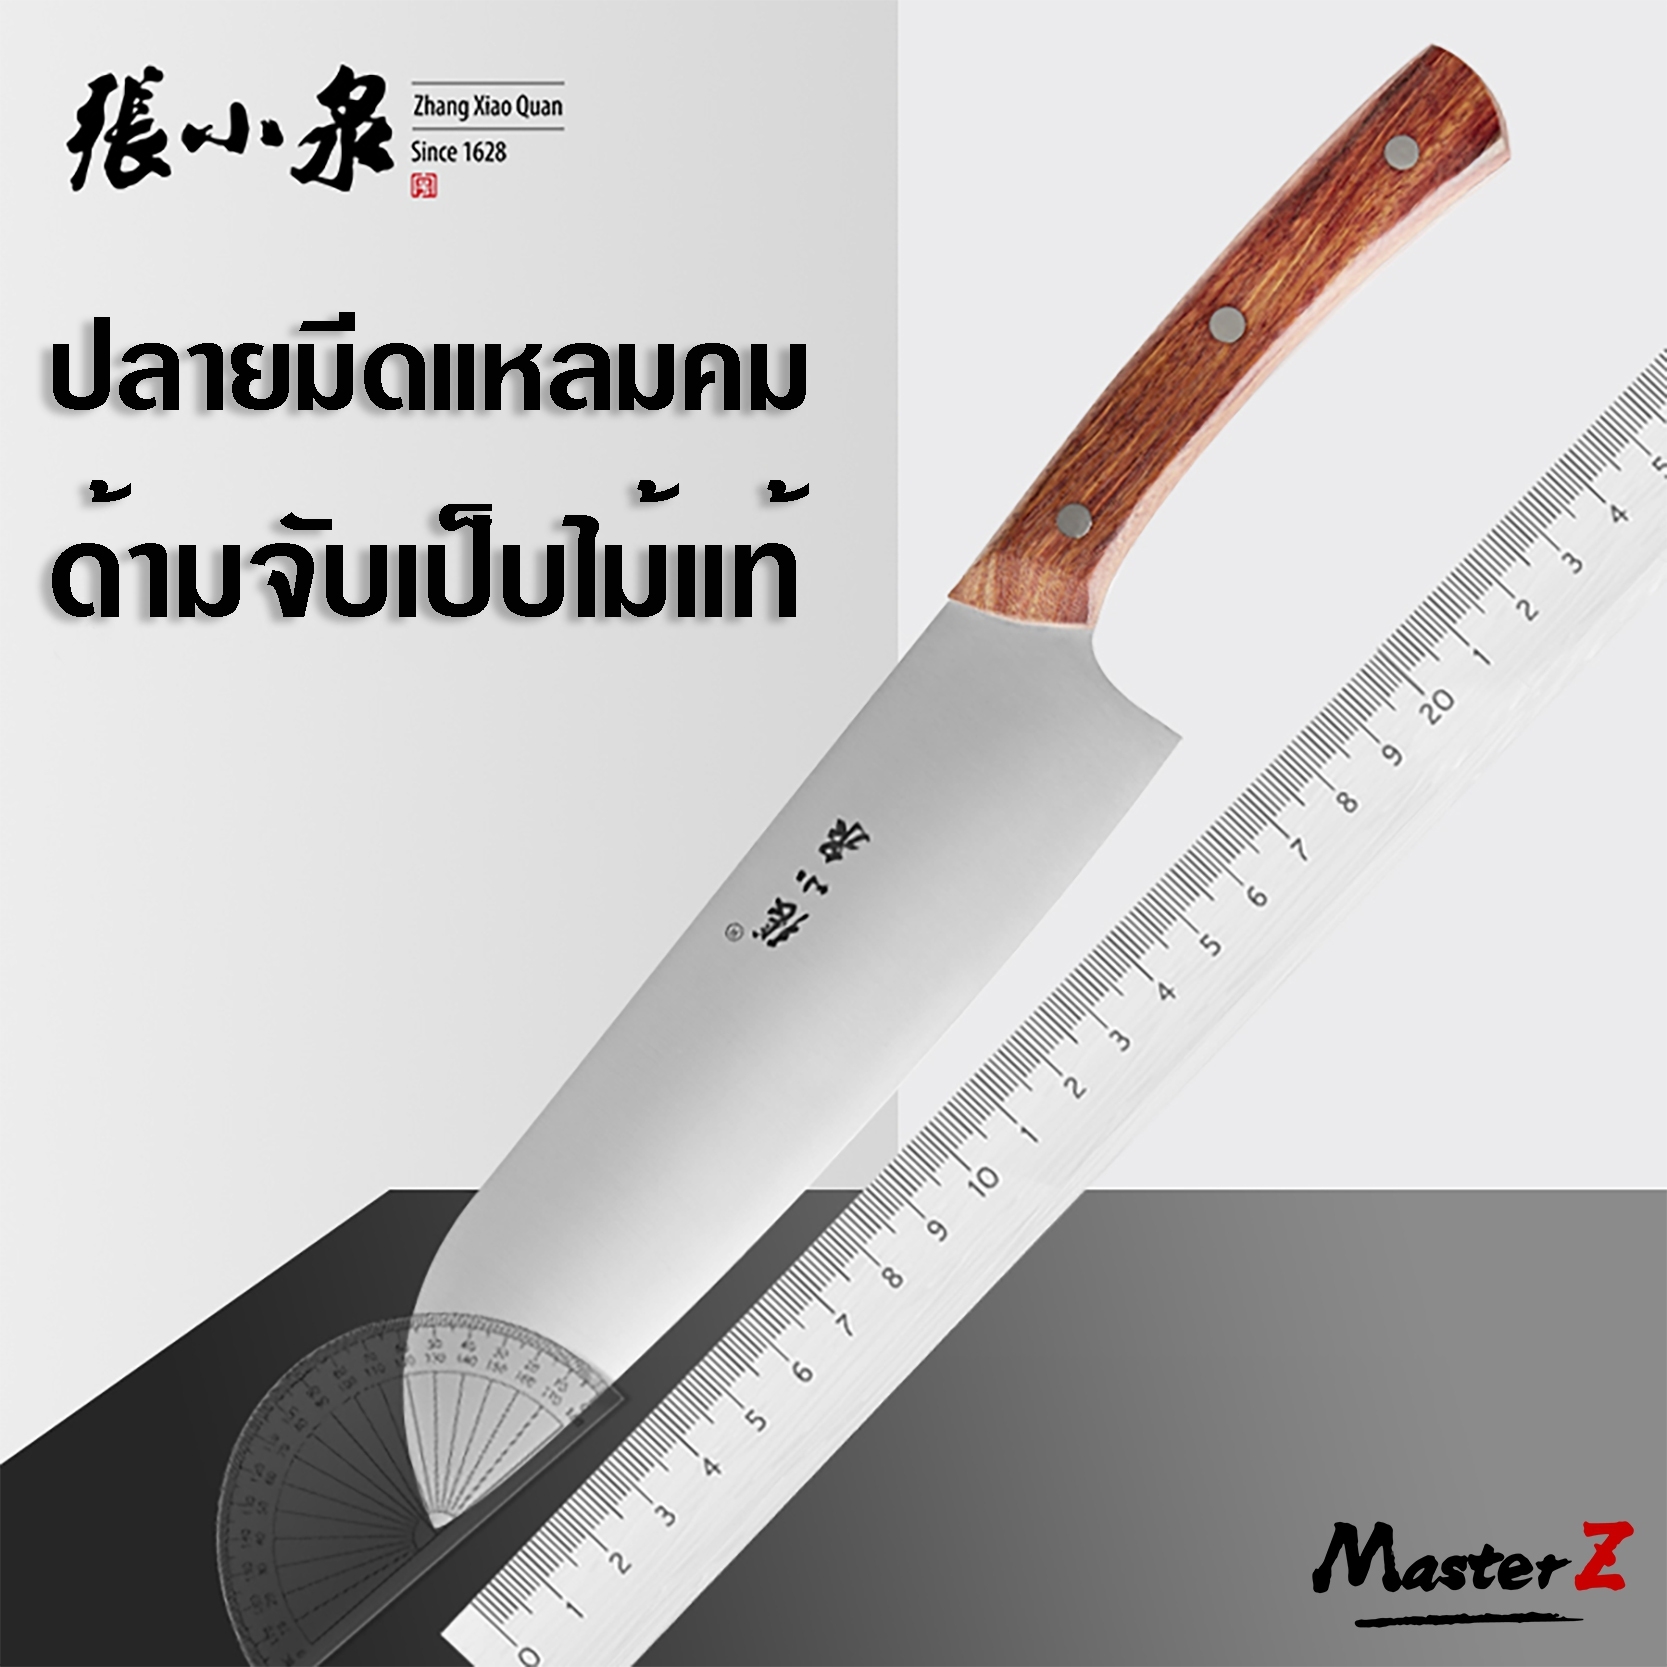 มีดครัว ZhangXiaoQuan มีด มีดหั่นเนื้อ หั่นผัก มีดตัดขนมปัง ใบมีดสแตนเลส ด้ามจับ ไม้แท้ D10543300S / MasterZ